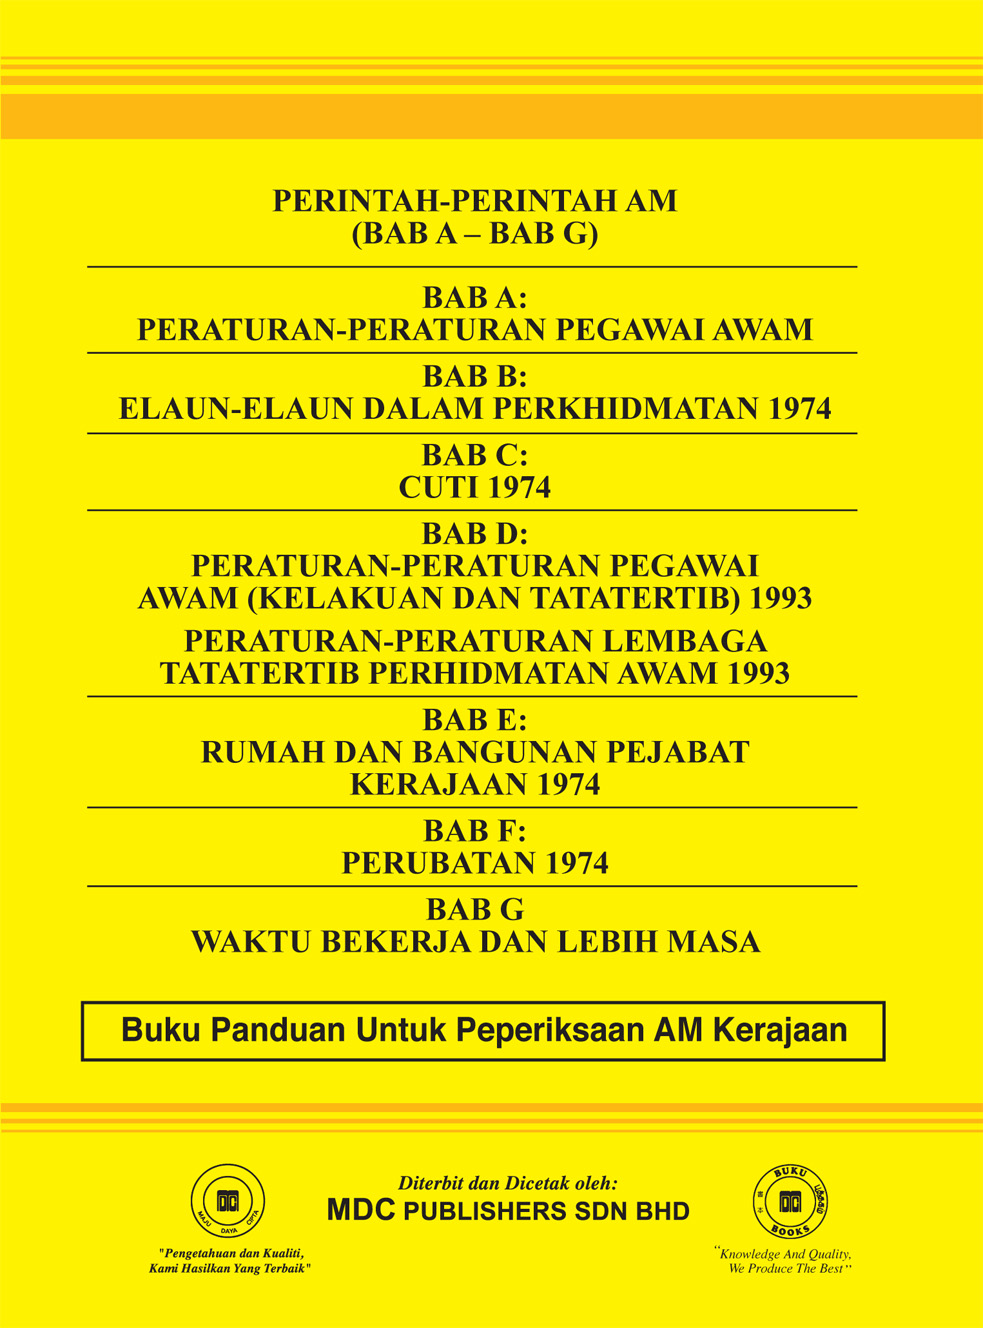 Laws Of Malaysia Perintah Perintah Am 2018